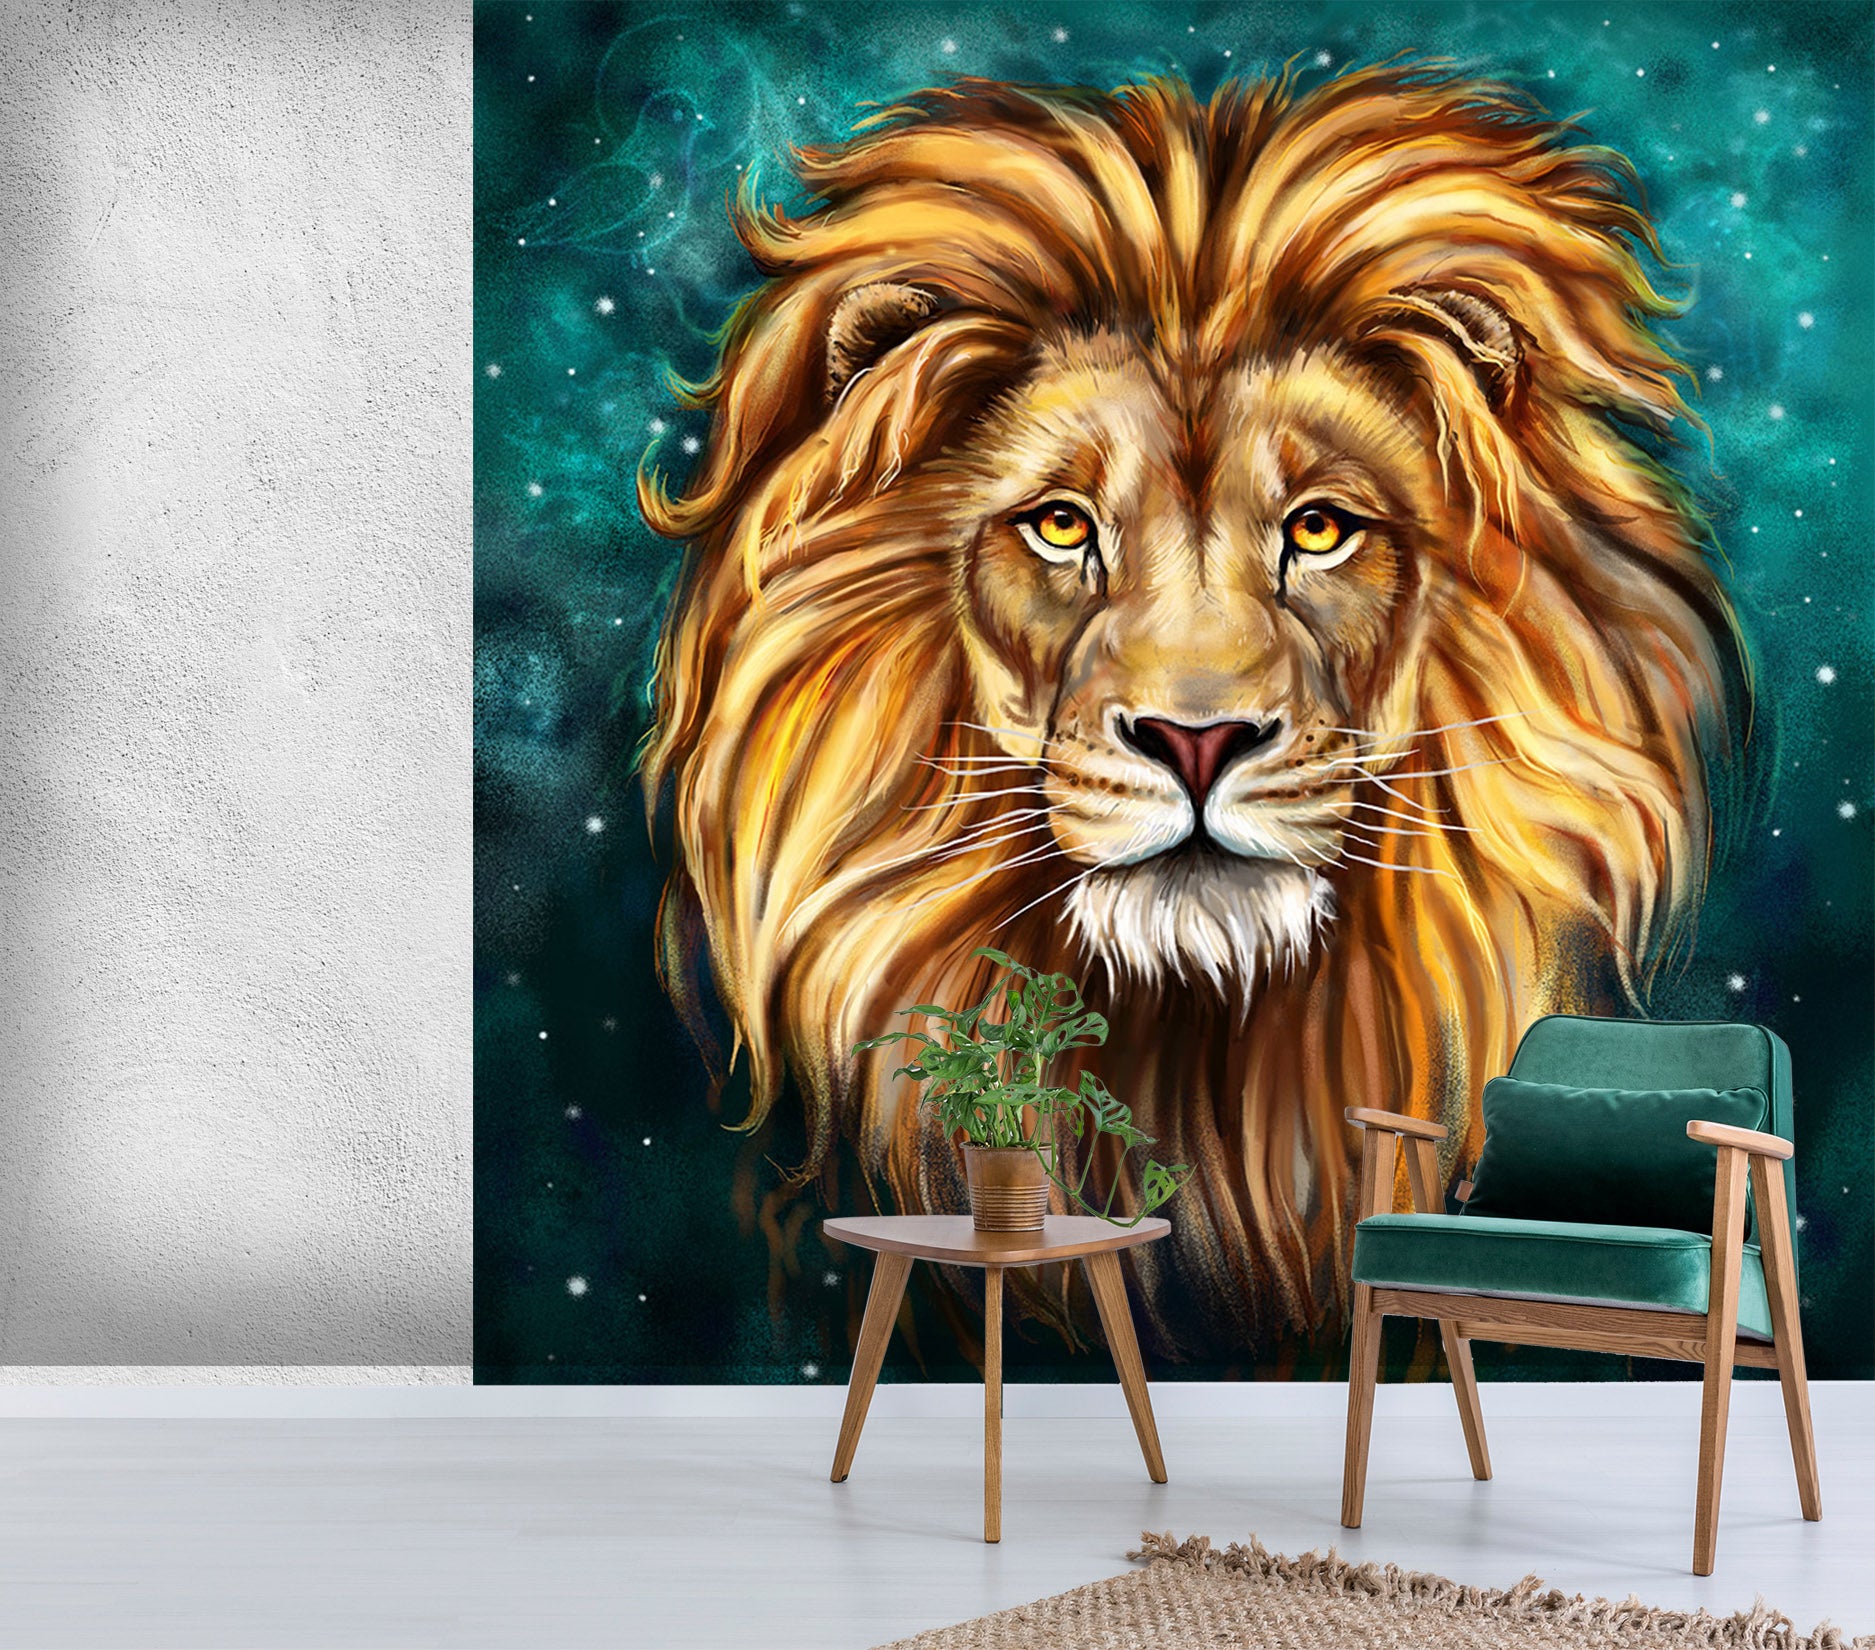 3D Lion Head Pattern 326 Wall Murals